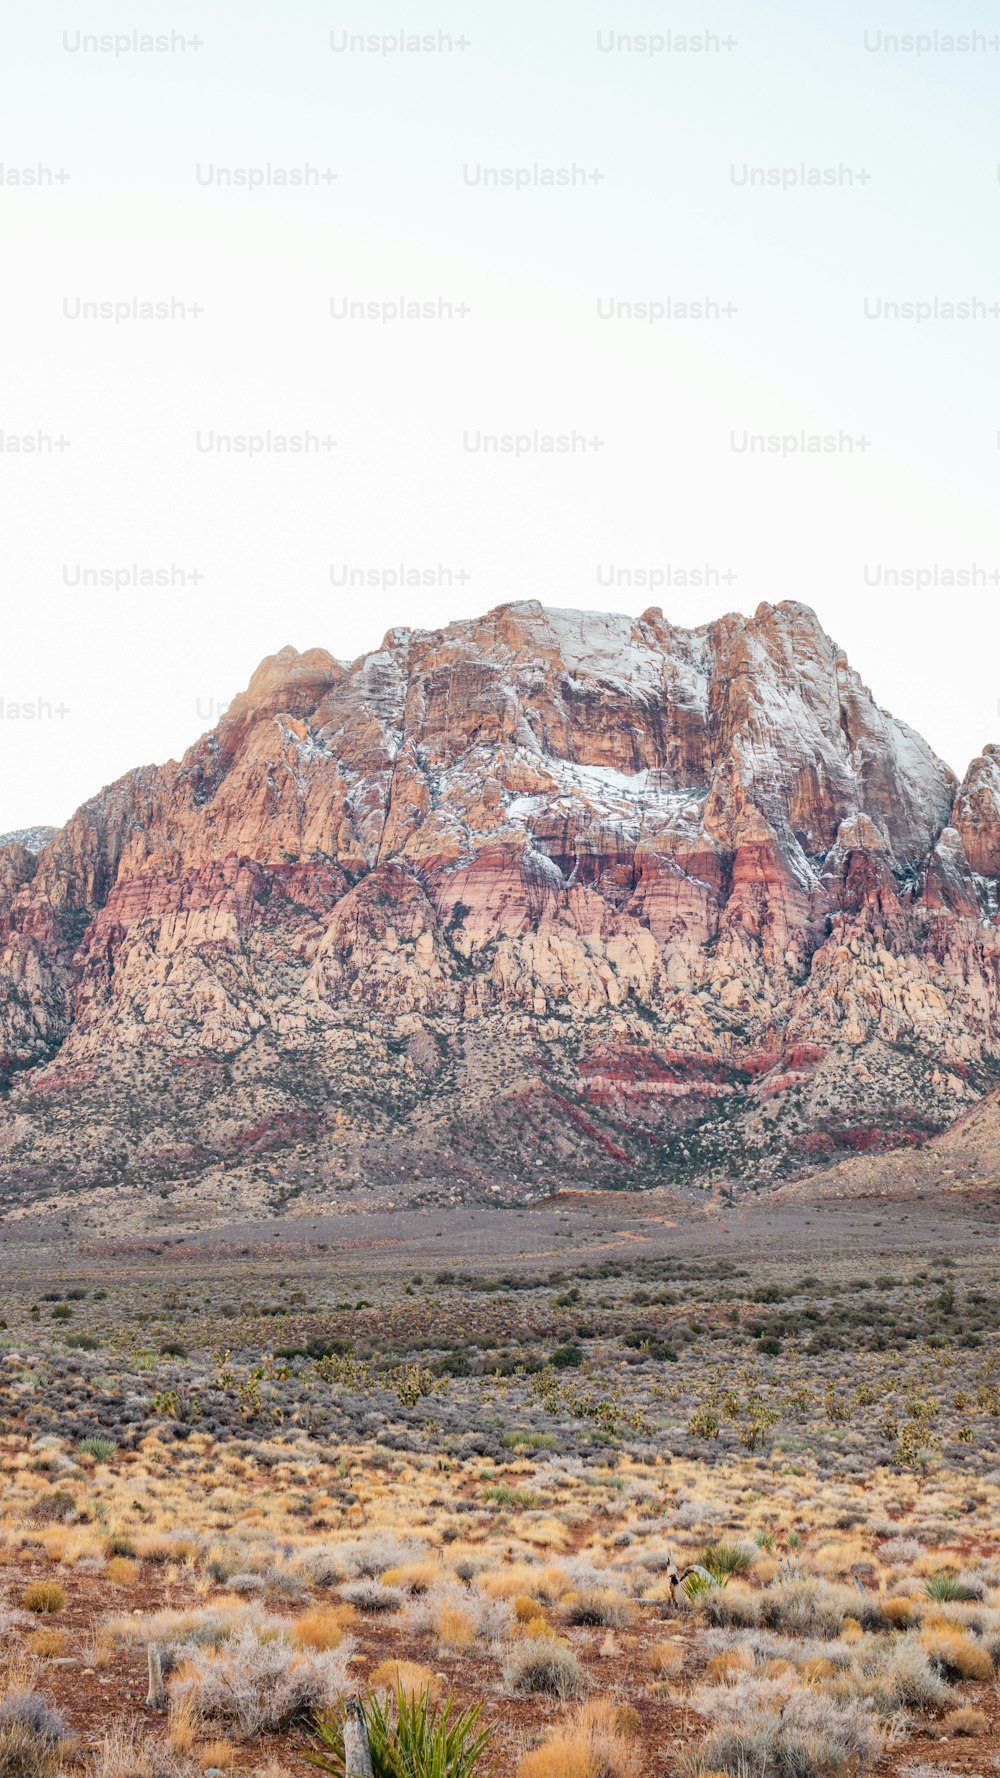 Ein Berg mit schneebedeckter Spitze in der Wüste